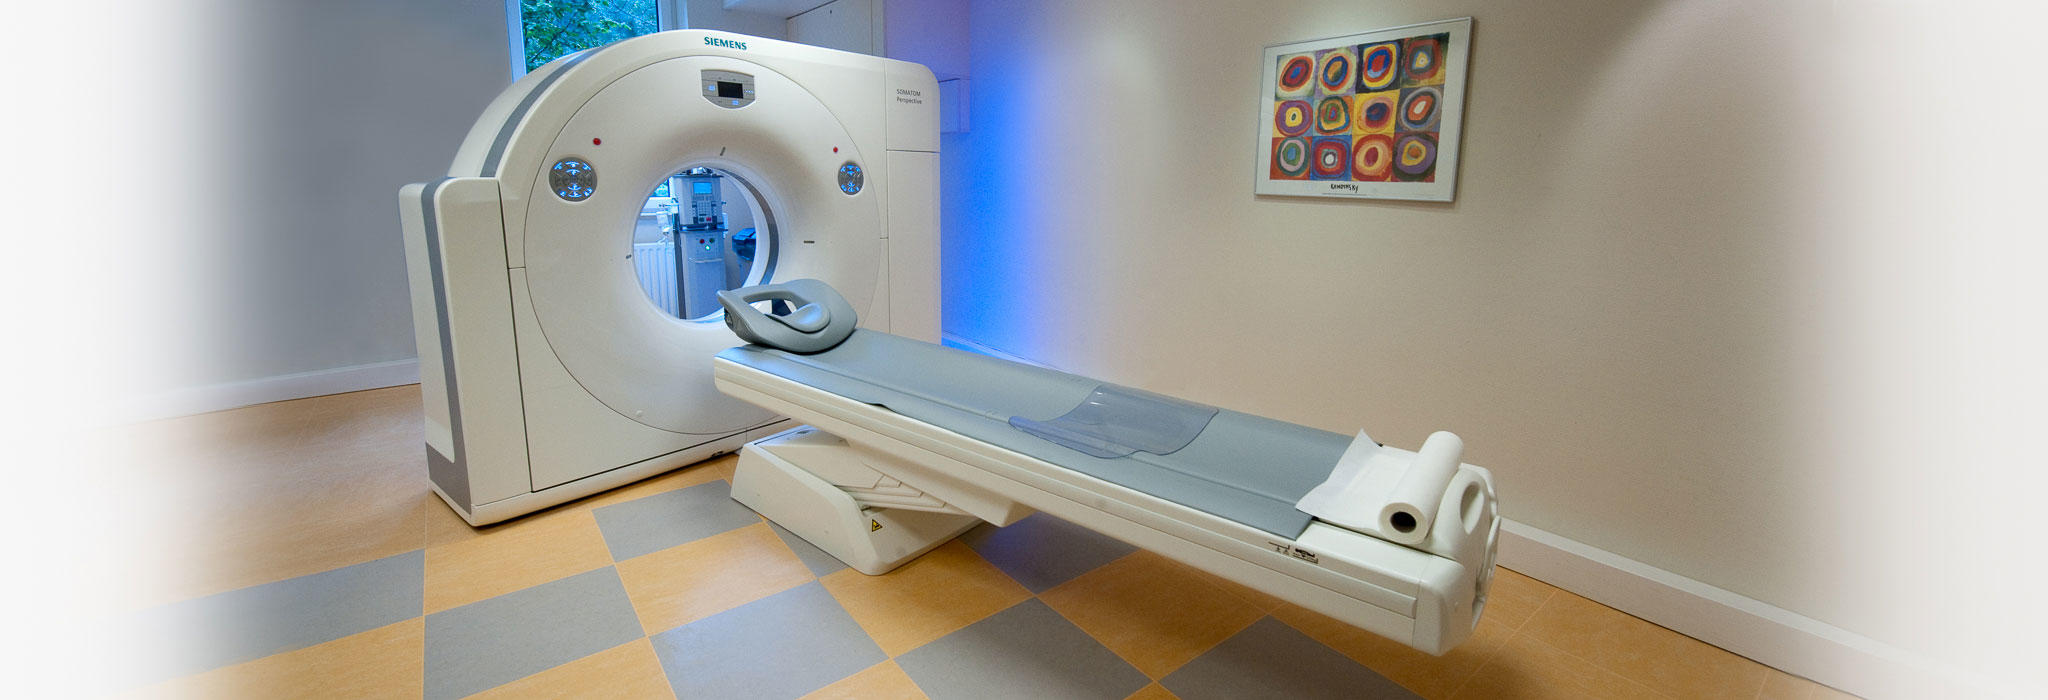 Kundenbild groß 1 Johann-C. Steffens Facharzt für diagnostische Radiologie